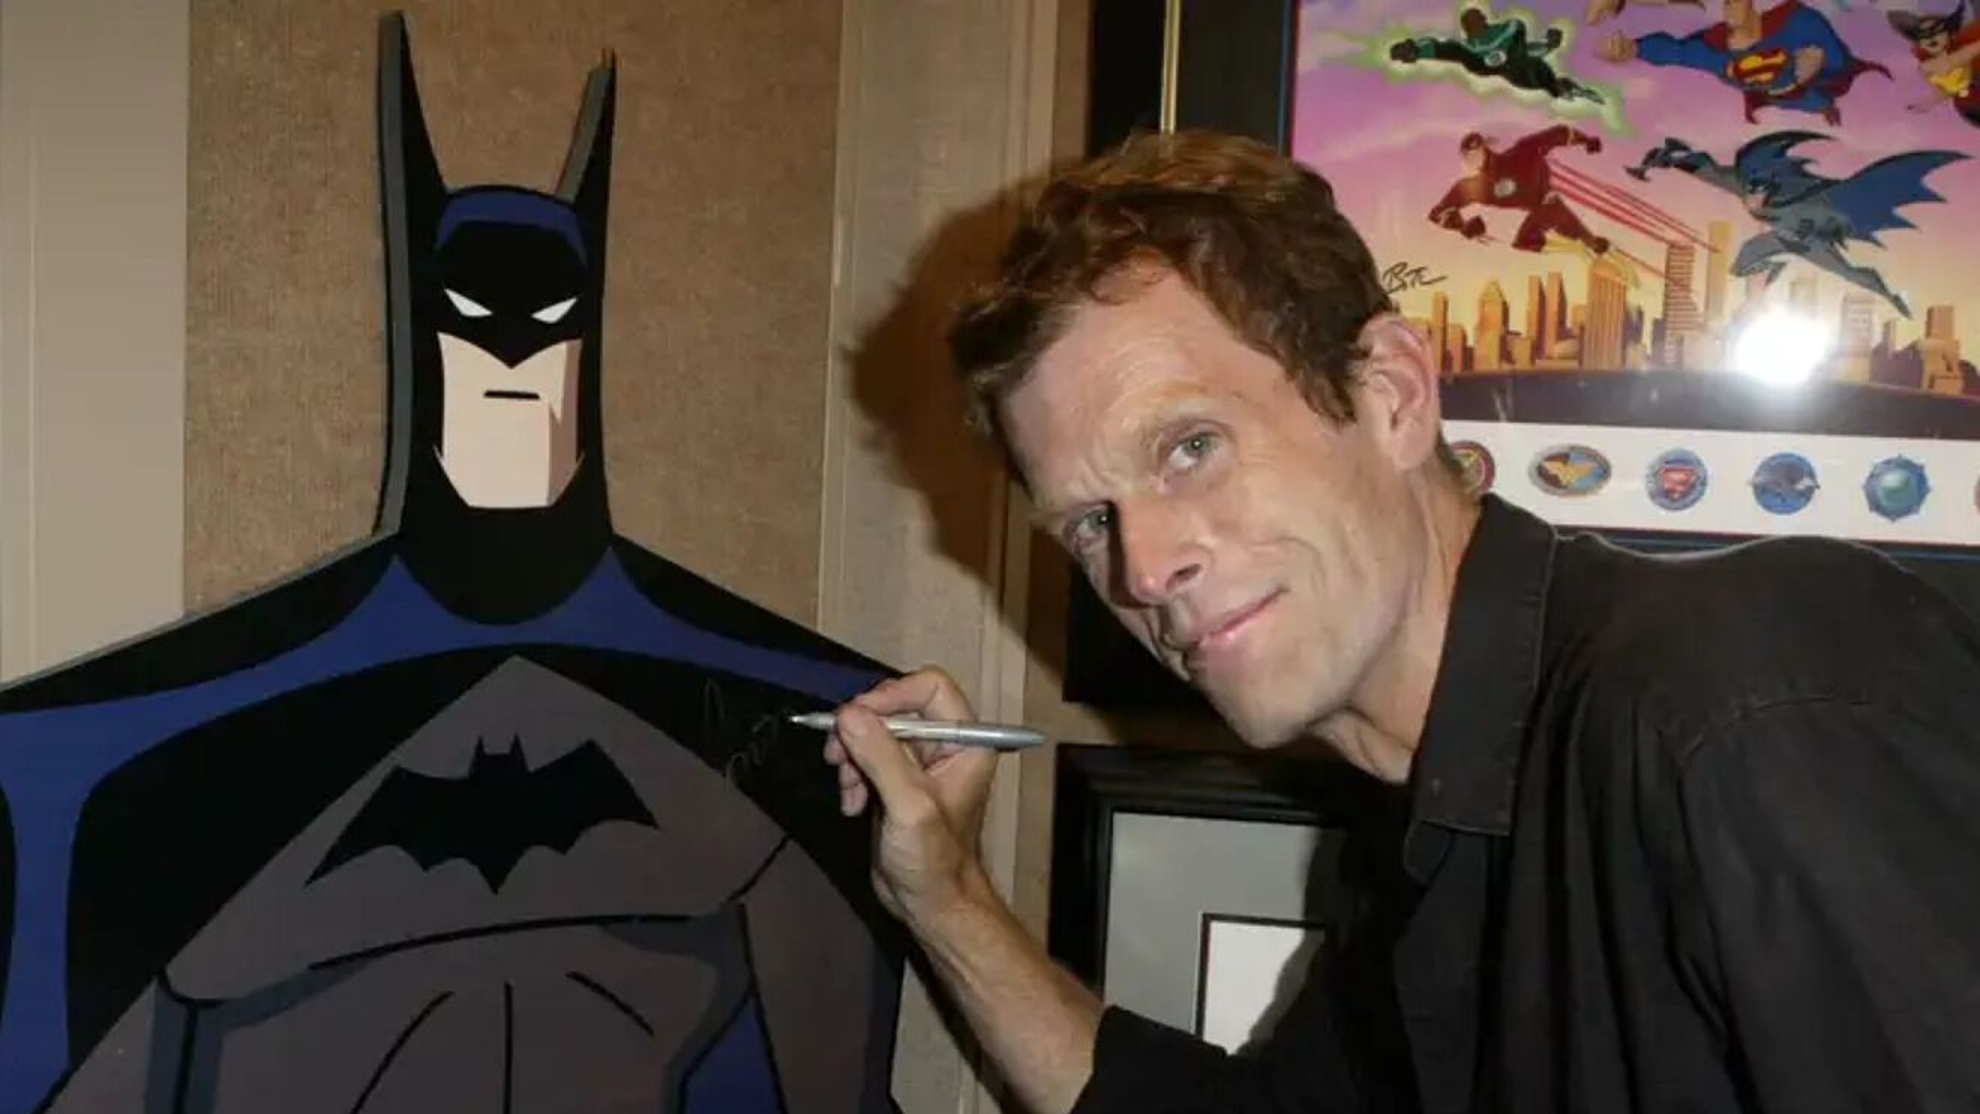 Muere Kevin Conroy, la voz de Batman en la serie animada; tenía 66 años